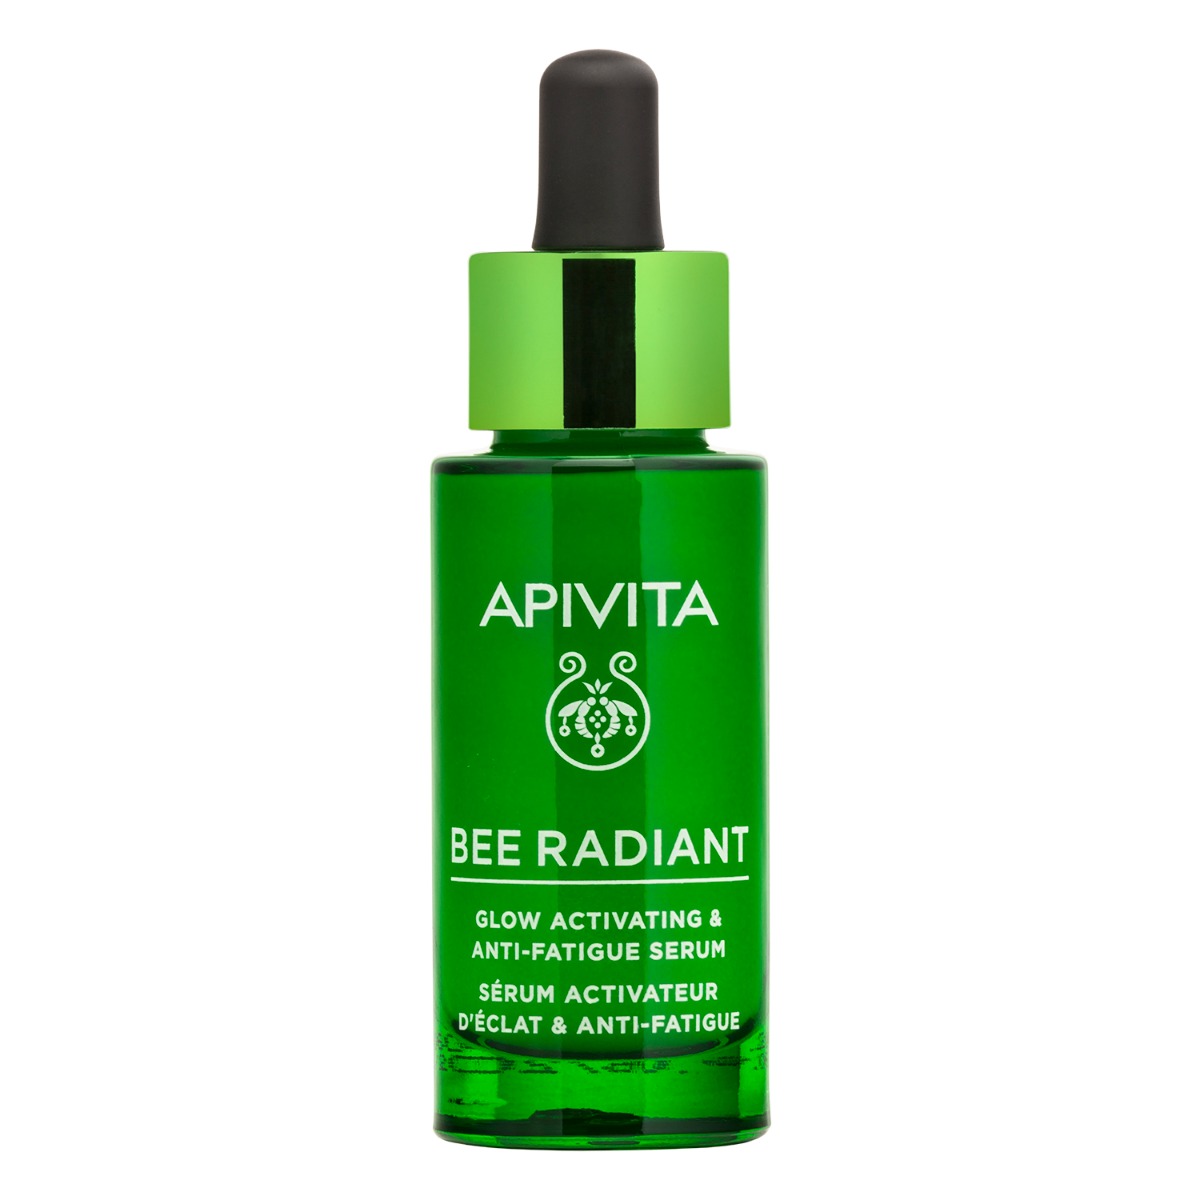 APIVITA Bee Radiant Glow Activating  Anti-fatique Serum, 30ml